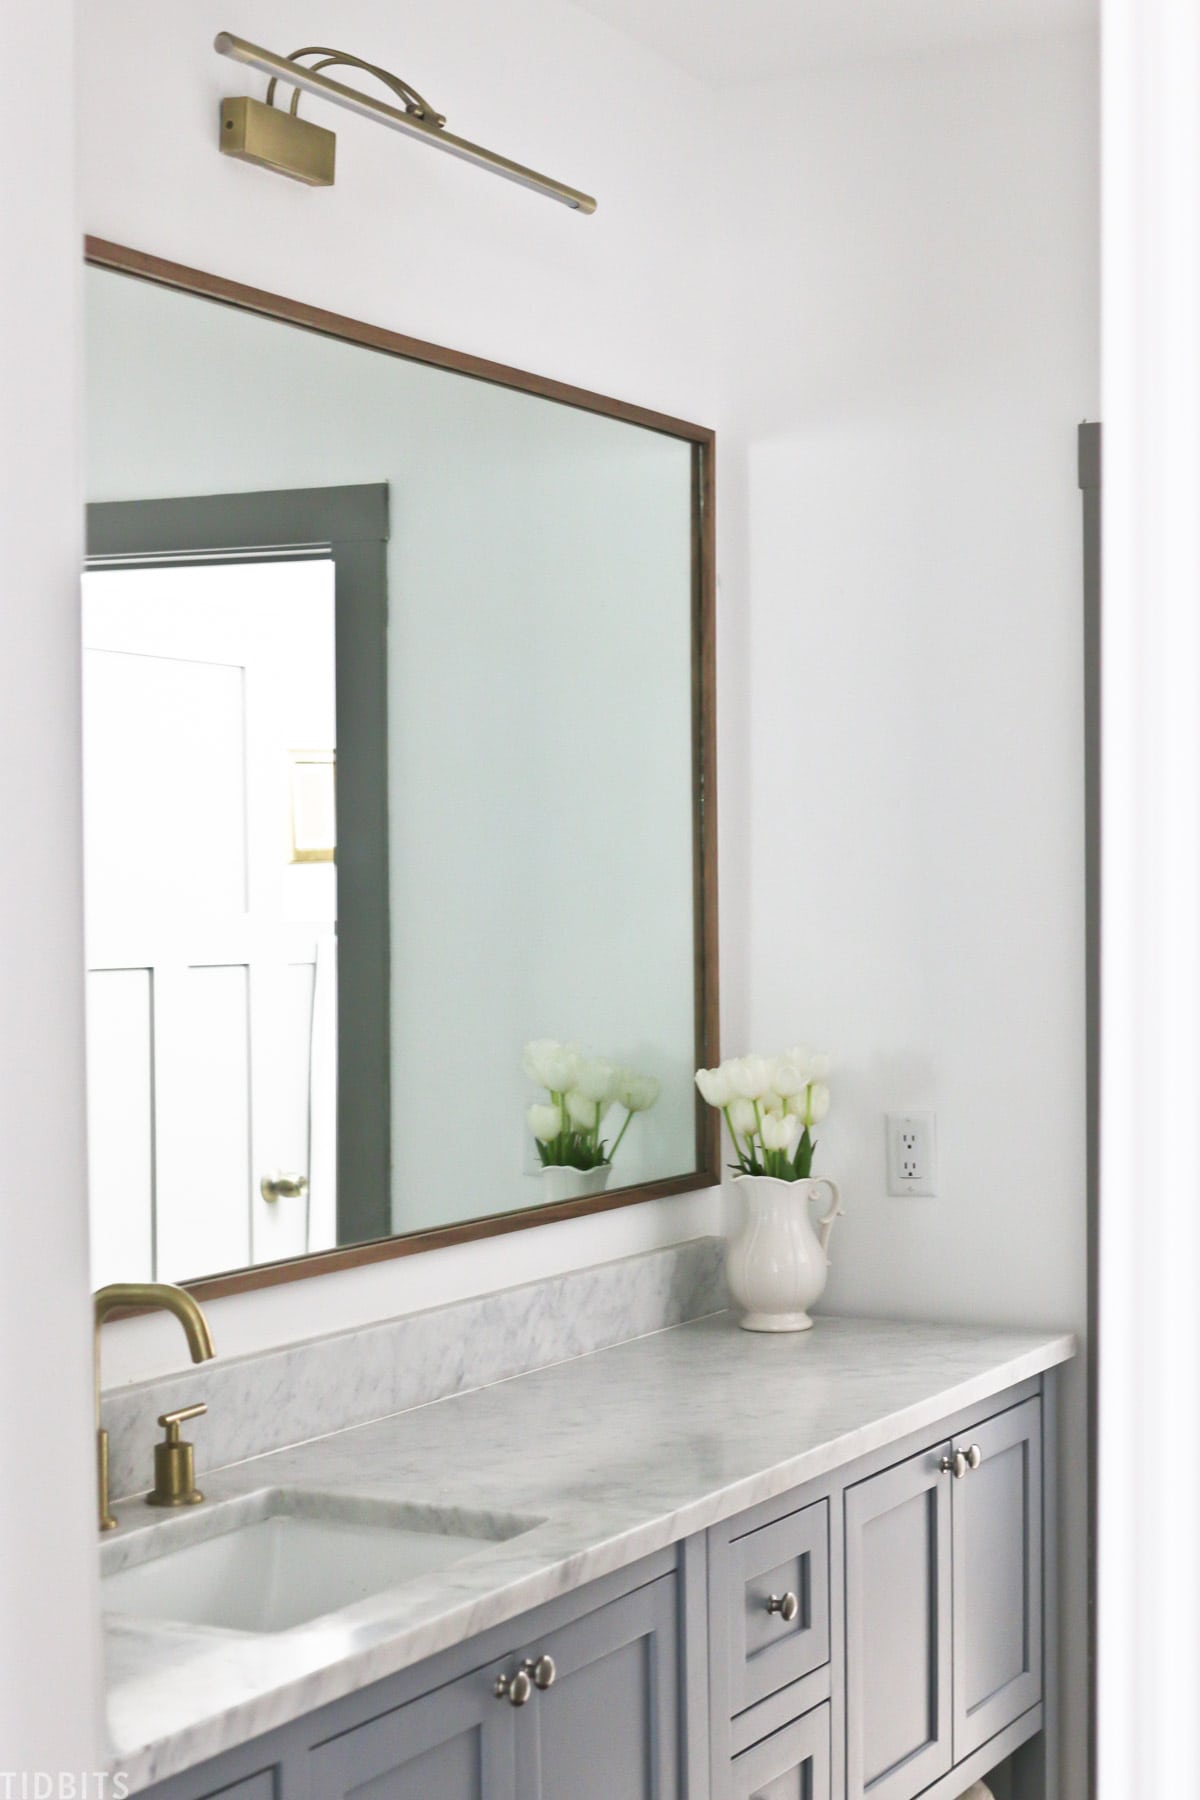 Diy Wood Mirror Frame For Bathroom, Easy Way To Frame A Bathroom Mirror